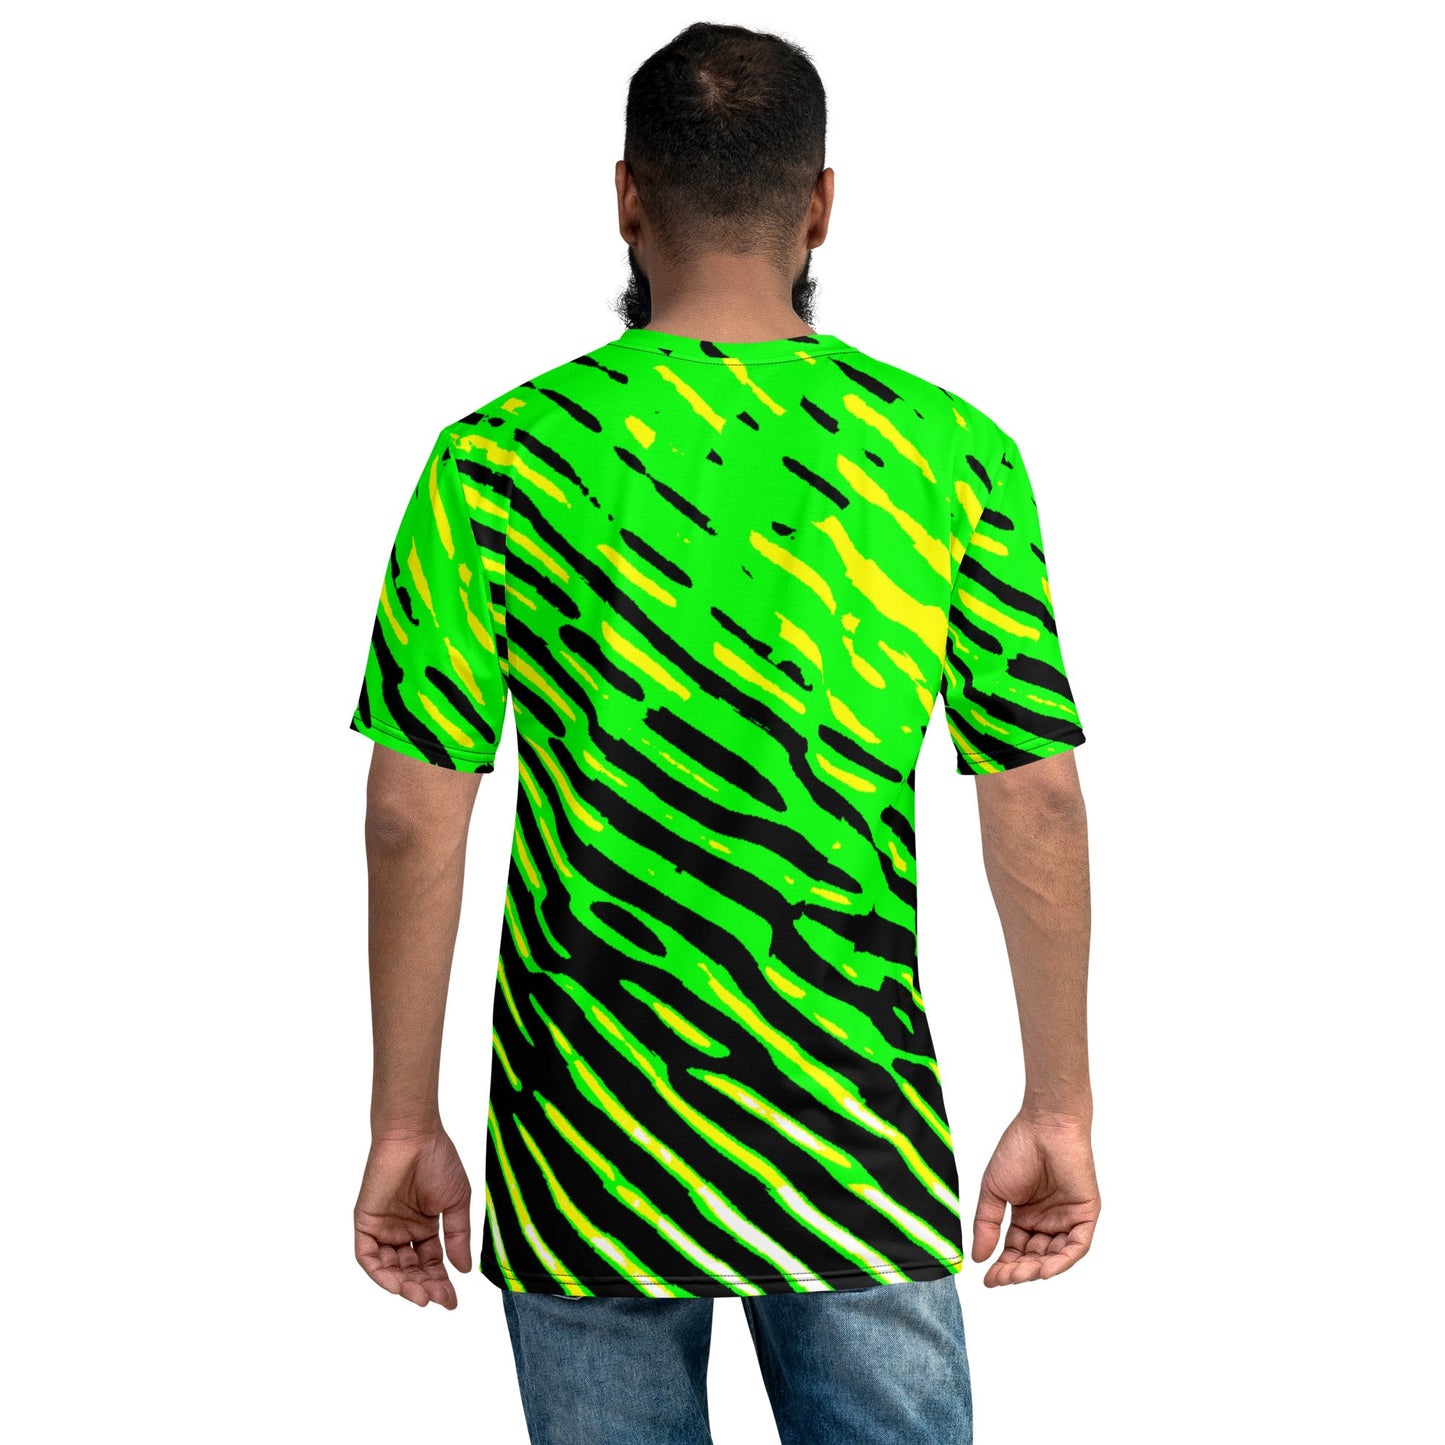 GreenS Men's t-shirt - Lizard Vigilante